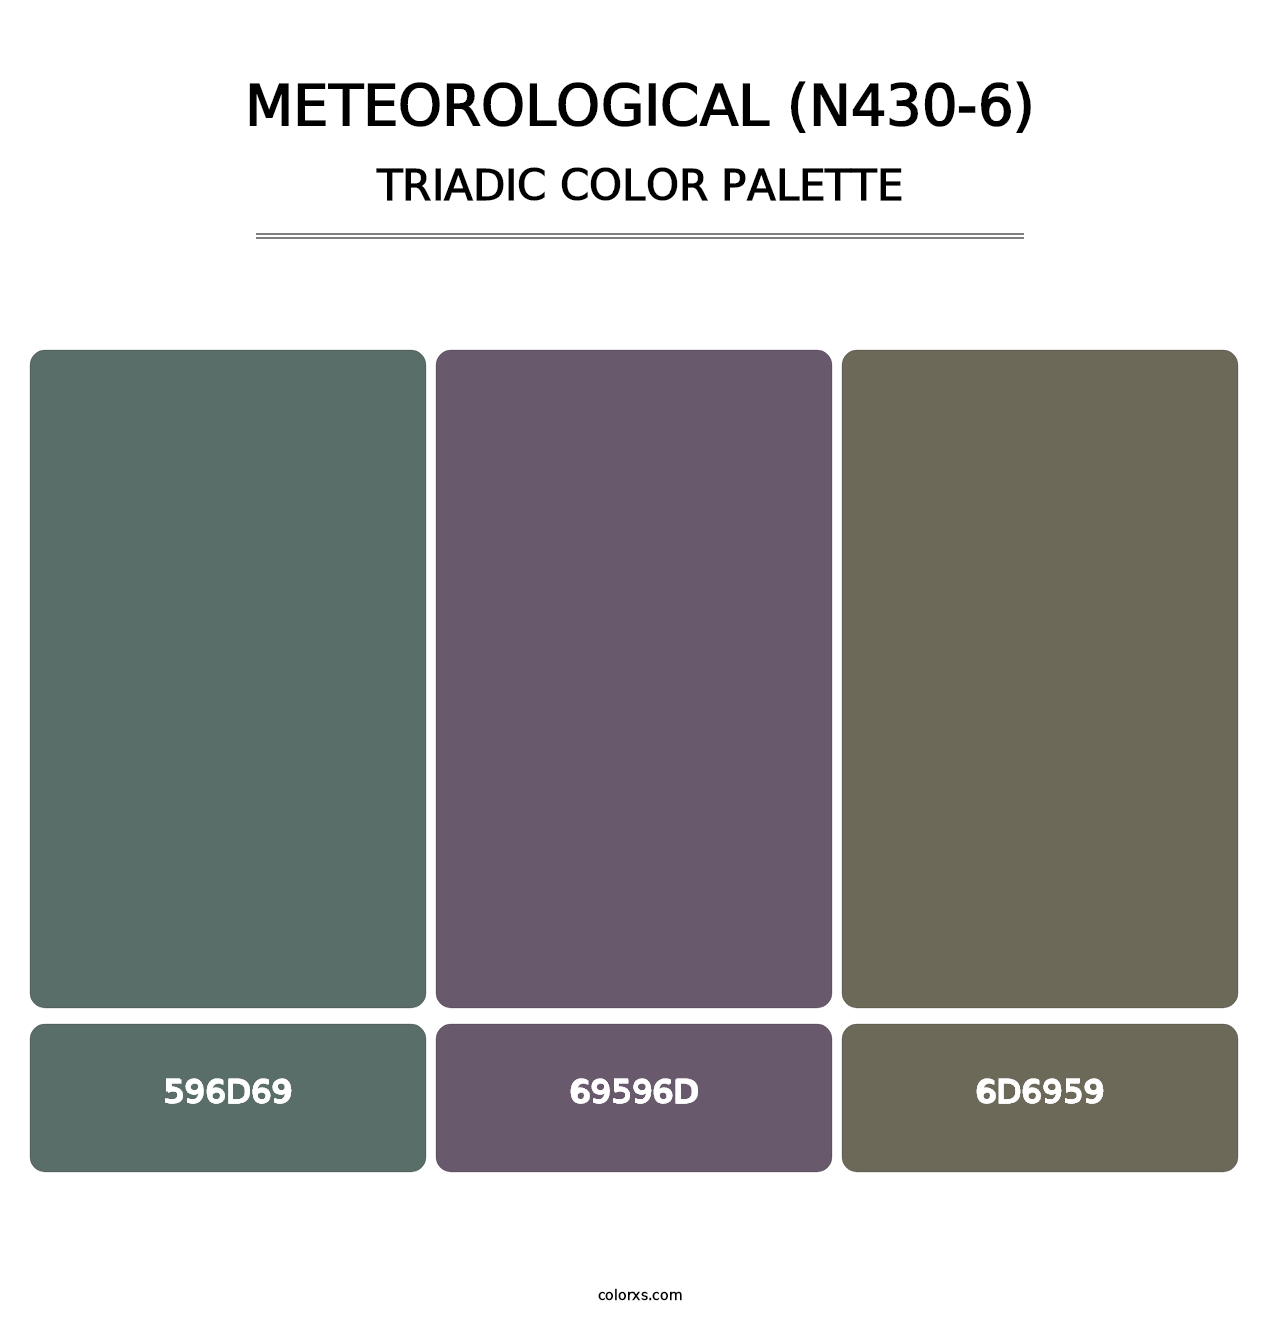 Meteorological (N430-6) - Triadic Color Palette